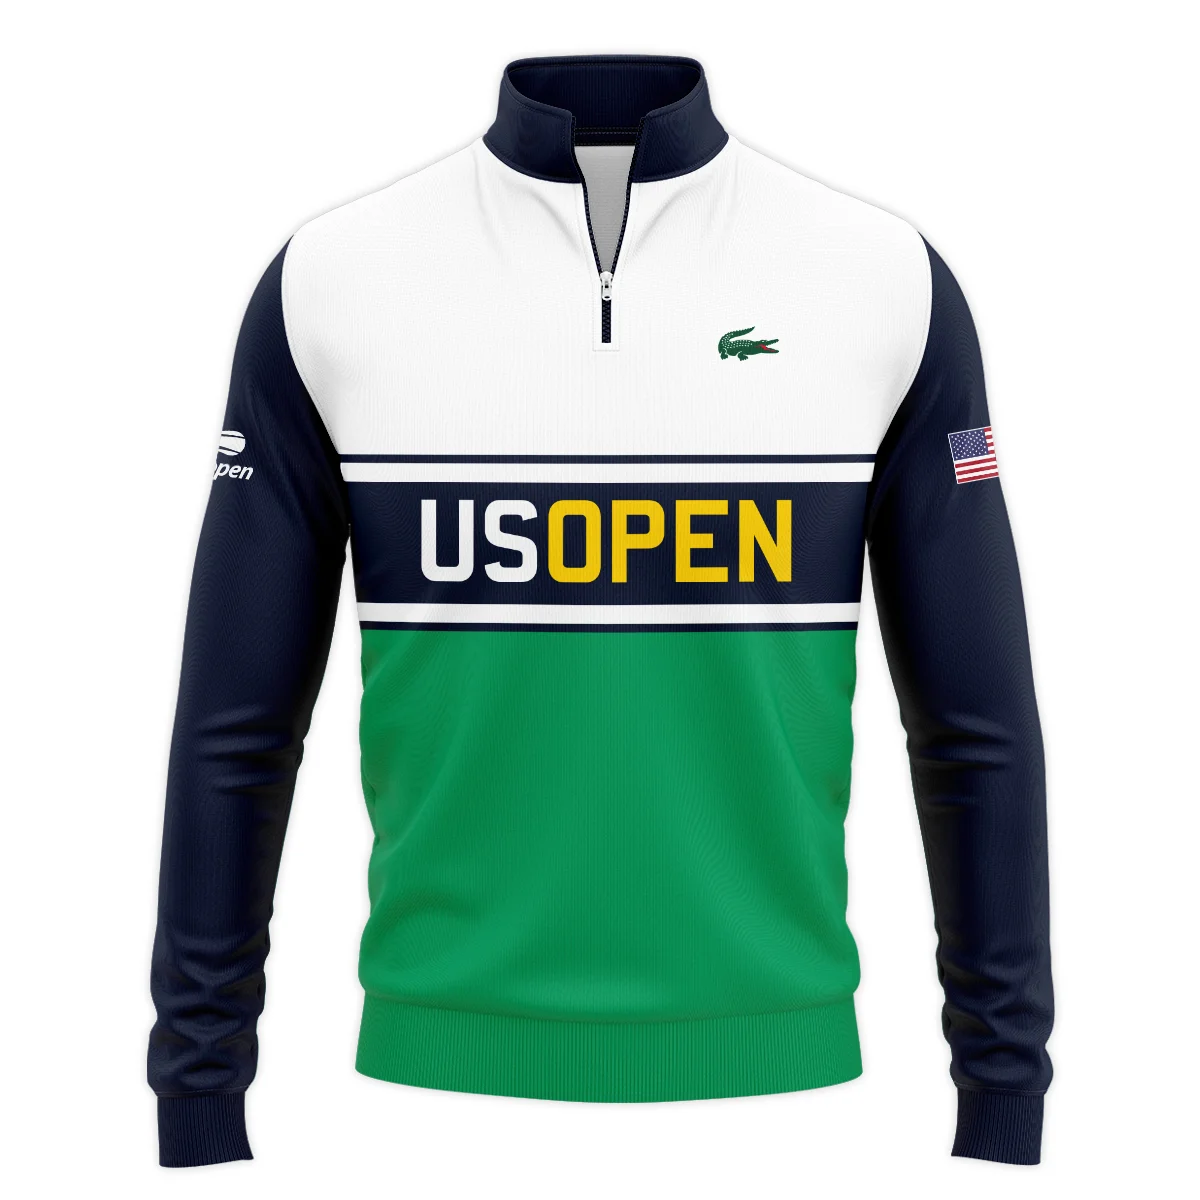 Tennis Love Sport Mix Color US Open Tennis Champions Lacoste Quarter-Zip Jacket Style Classic Quarter-Zip Jacket